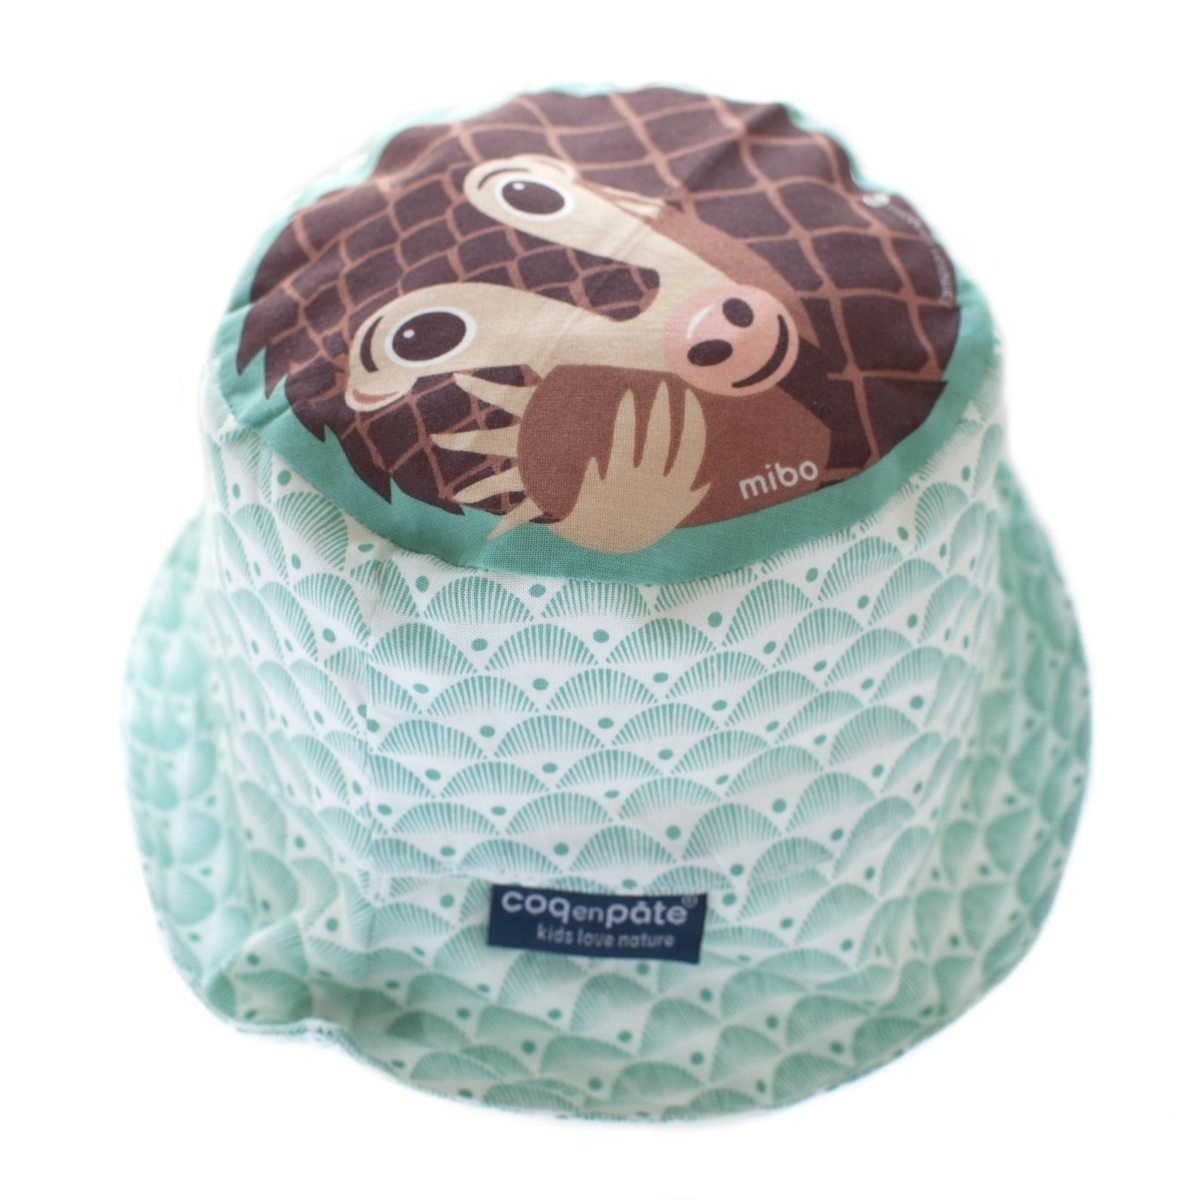 COQ EN PATE Sonnenhut Farbenfroher Kinder-Hut mit Tiermotiven und Mustern Sonnenschutz Schuppentier - Größe: M